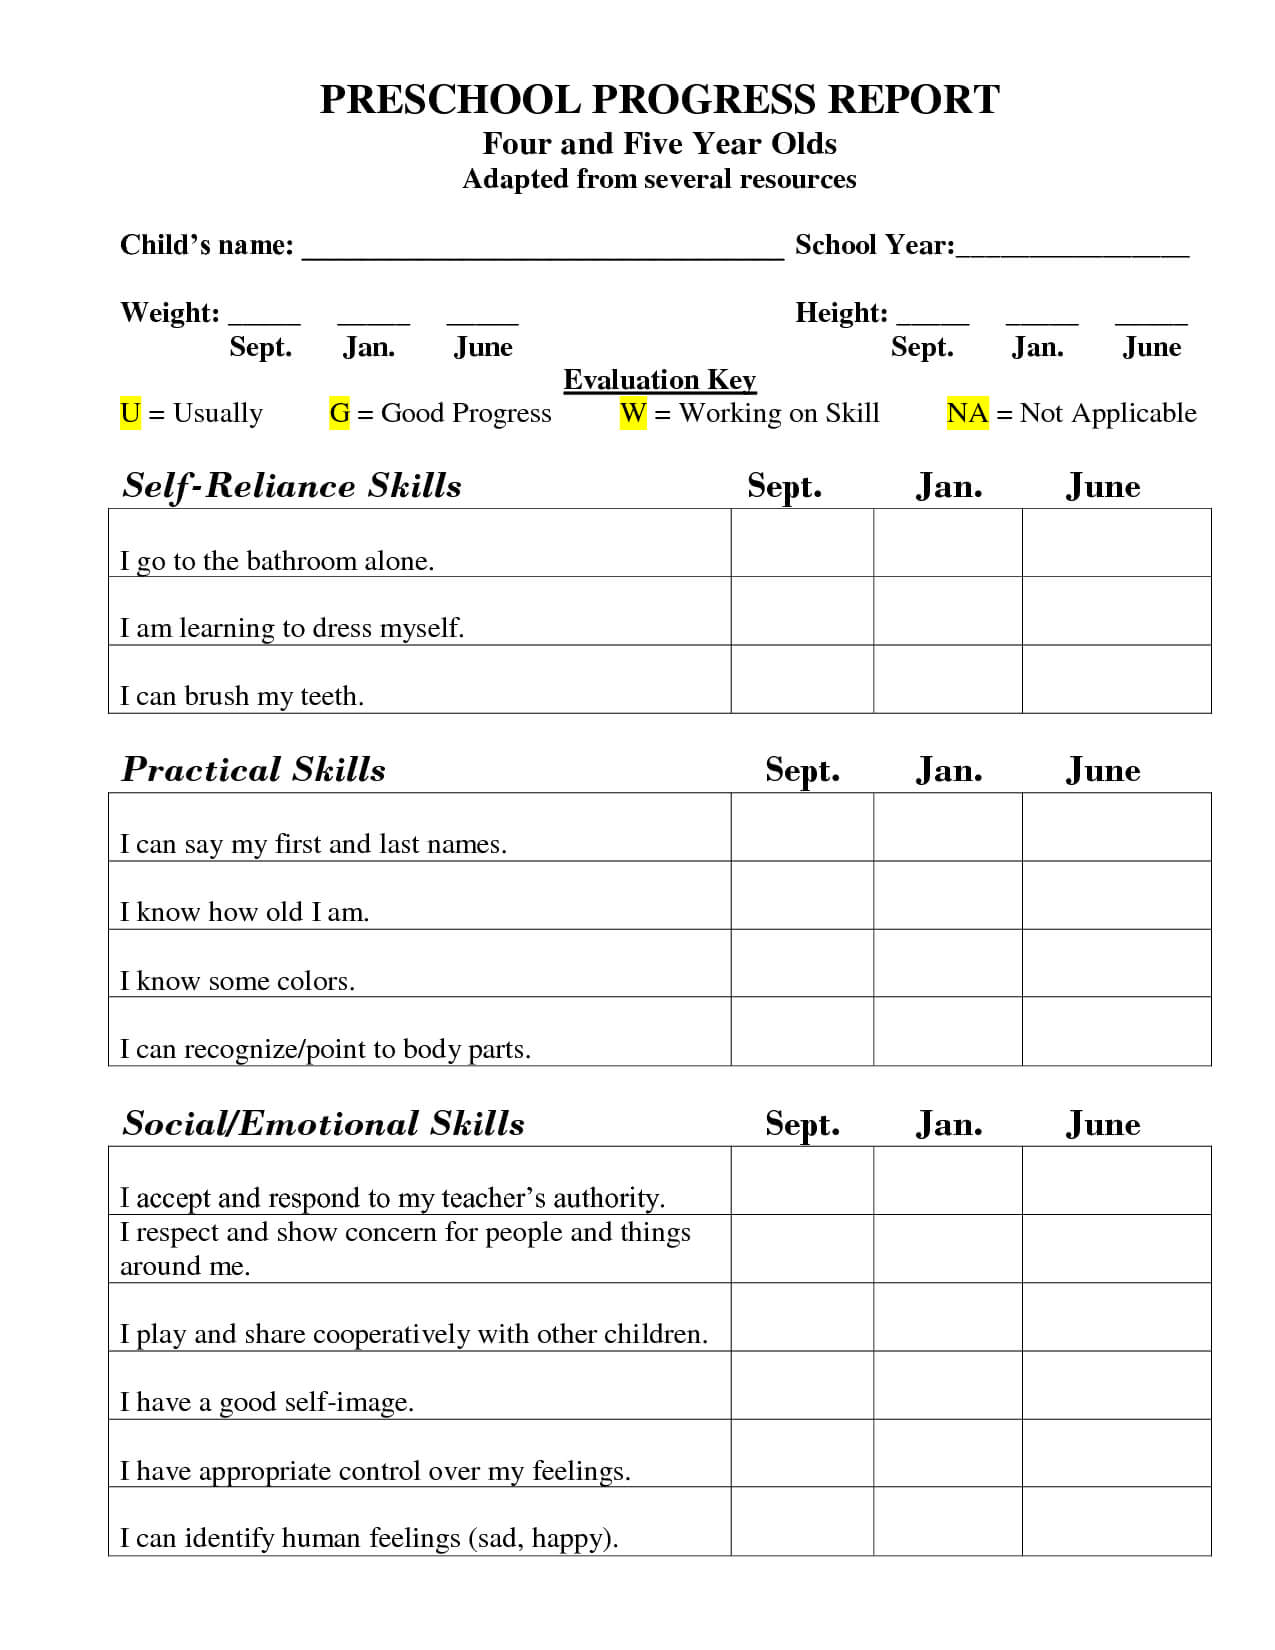 Preschool Progress Report Template | School Report Card For Preschool Progress Report Template